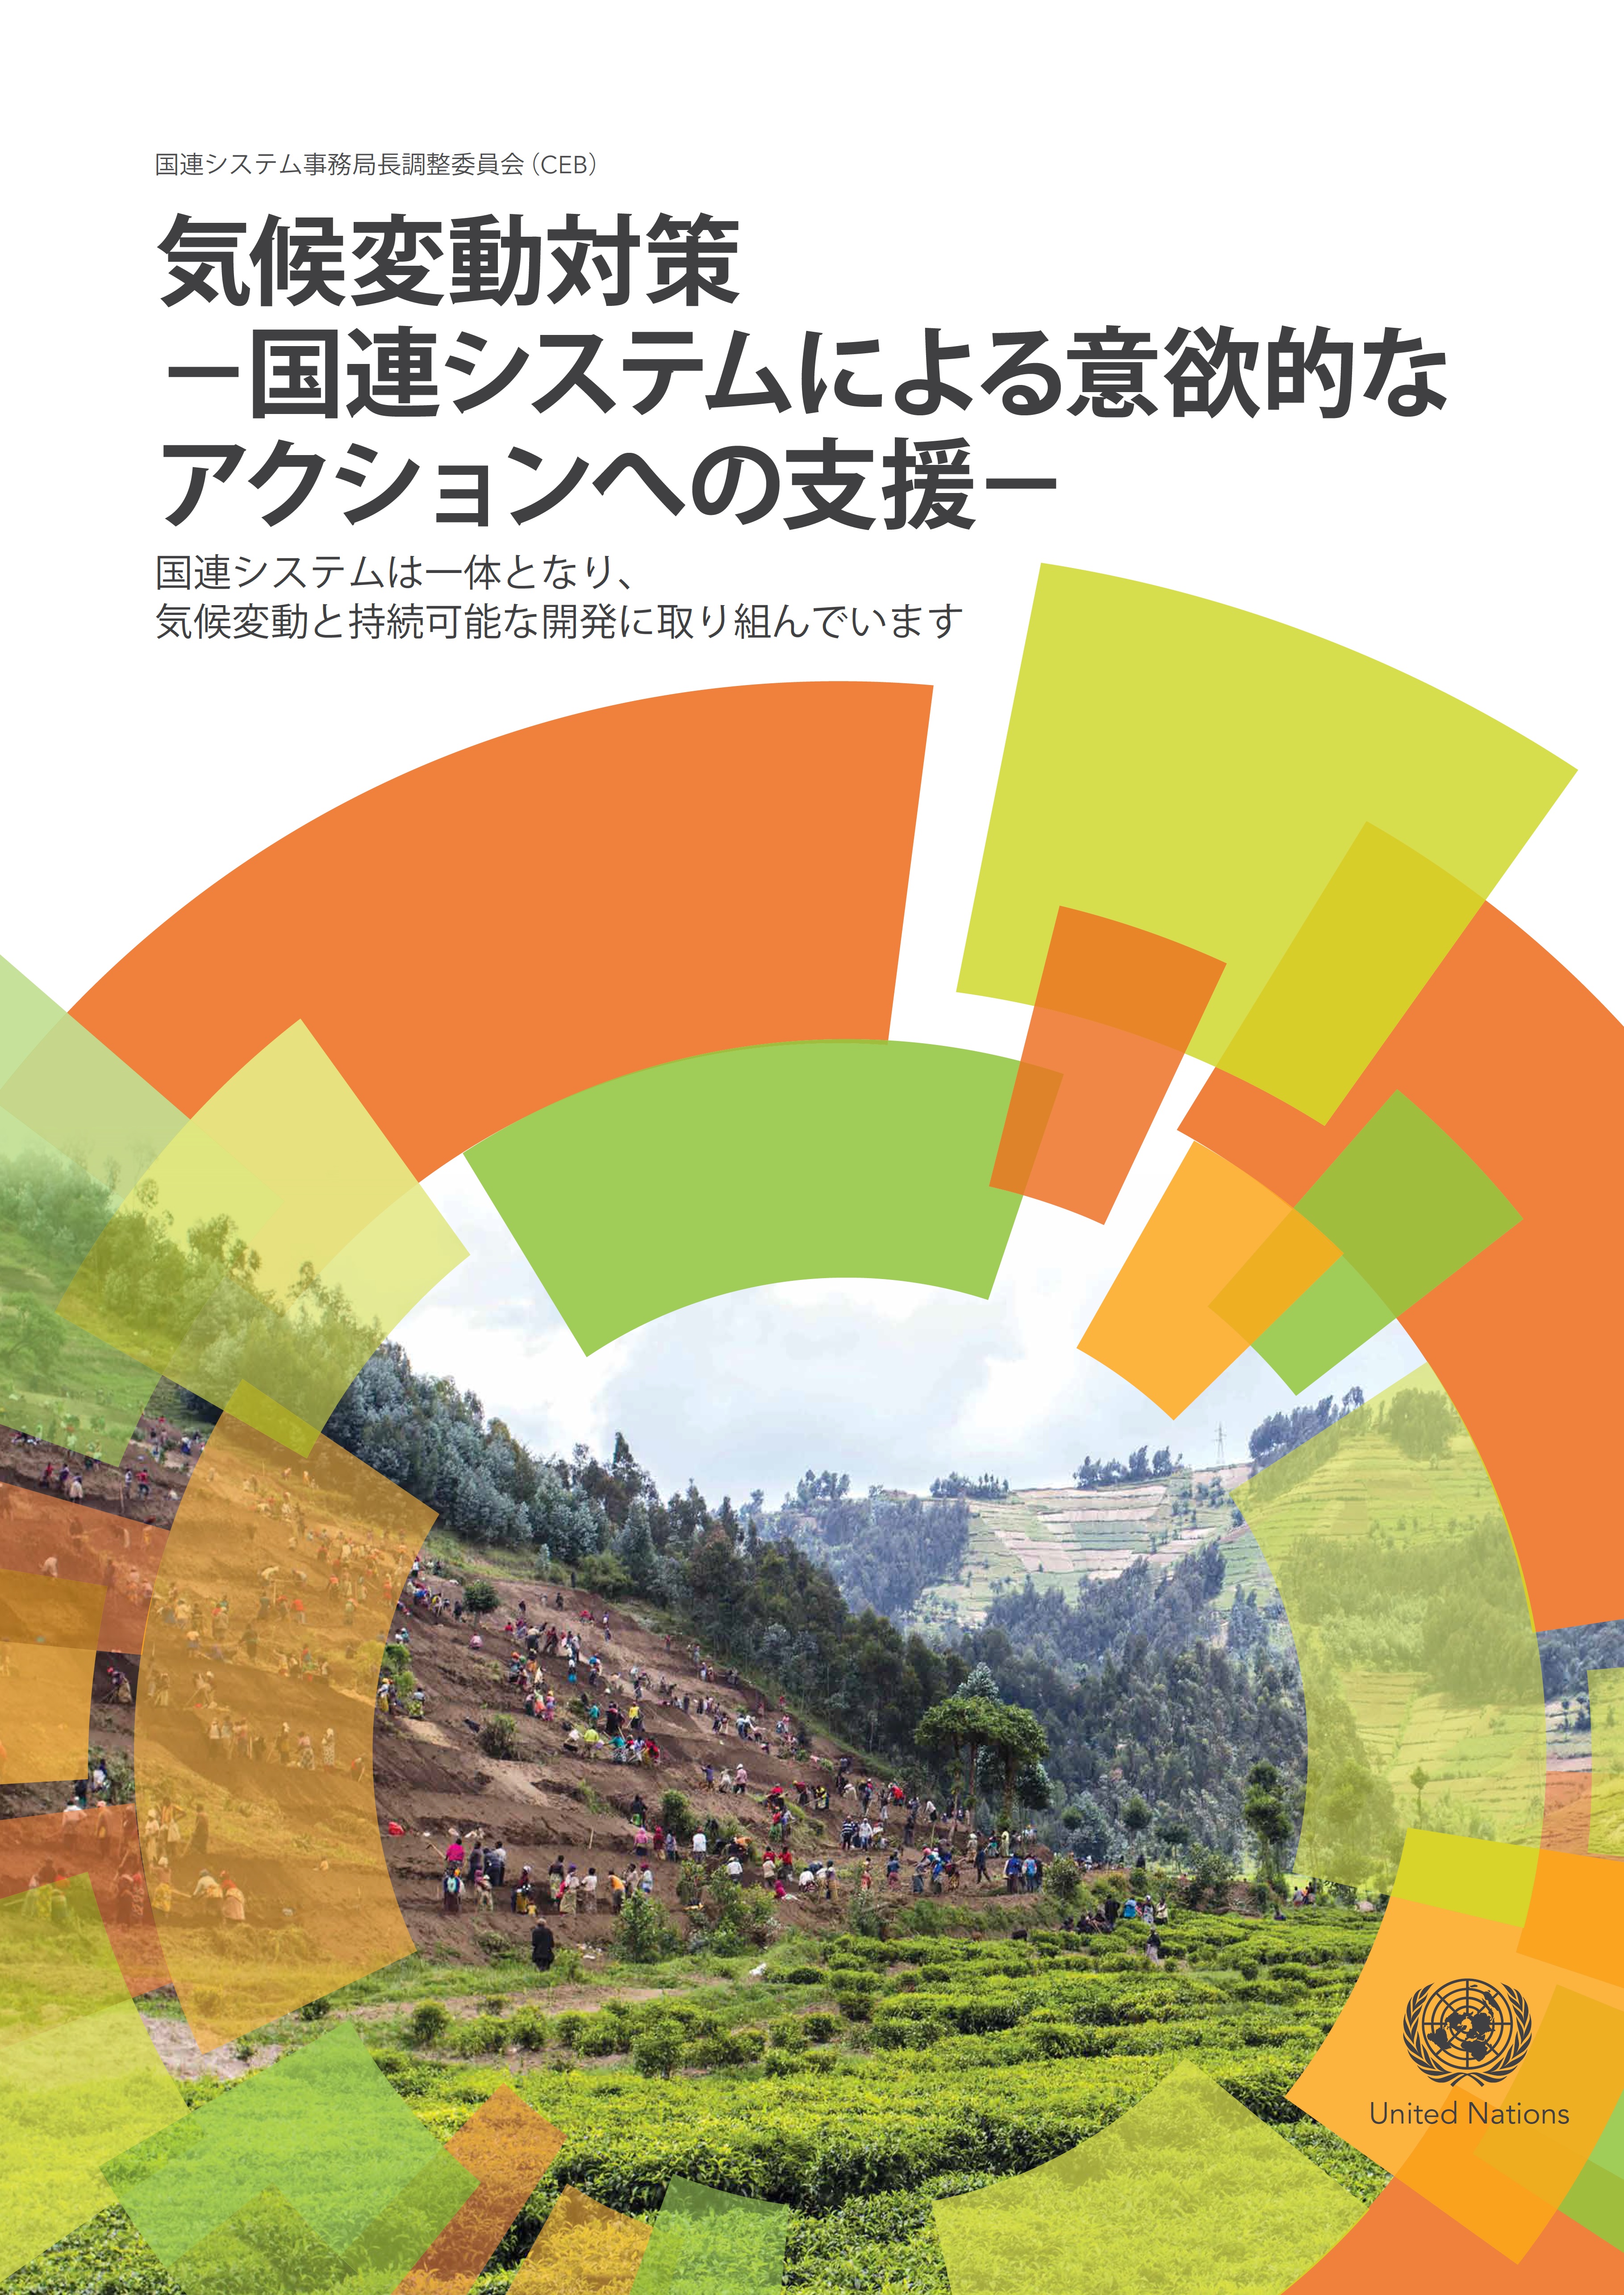 国連システム事務局長調整委員会（CEB）報告書（日本語版）：「気候変動対策 － 国連システムによる意欲的なアクションへの支援－」